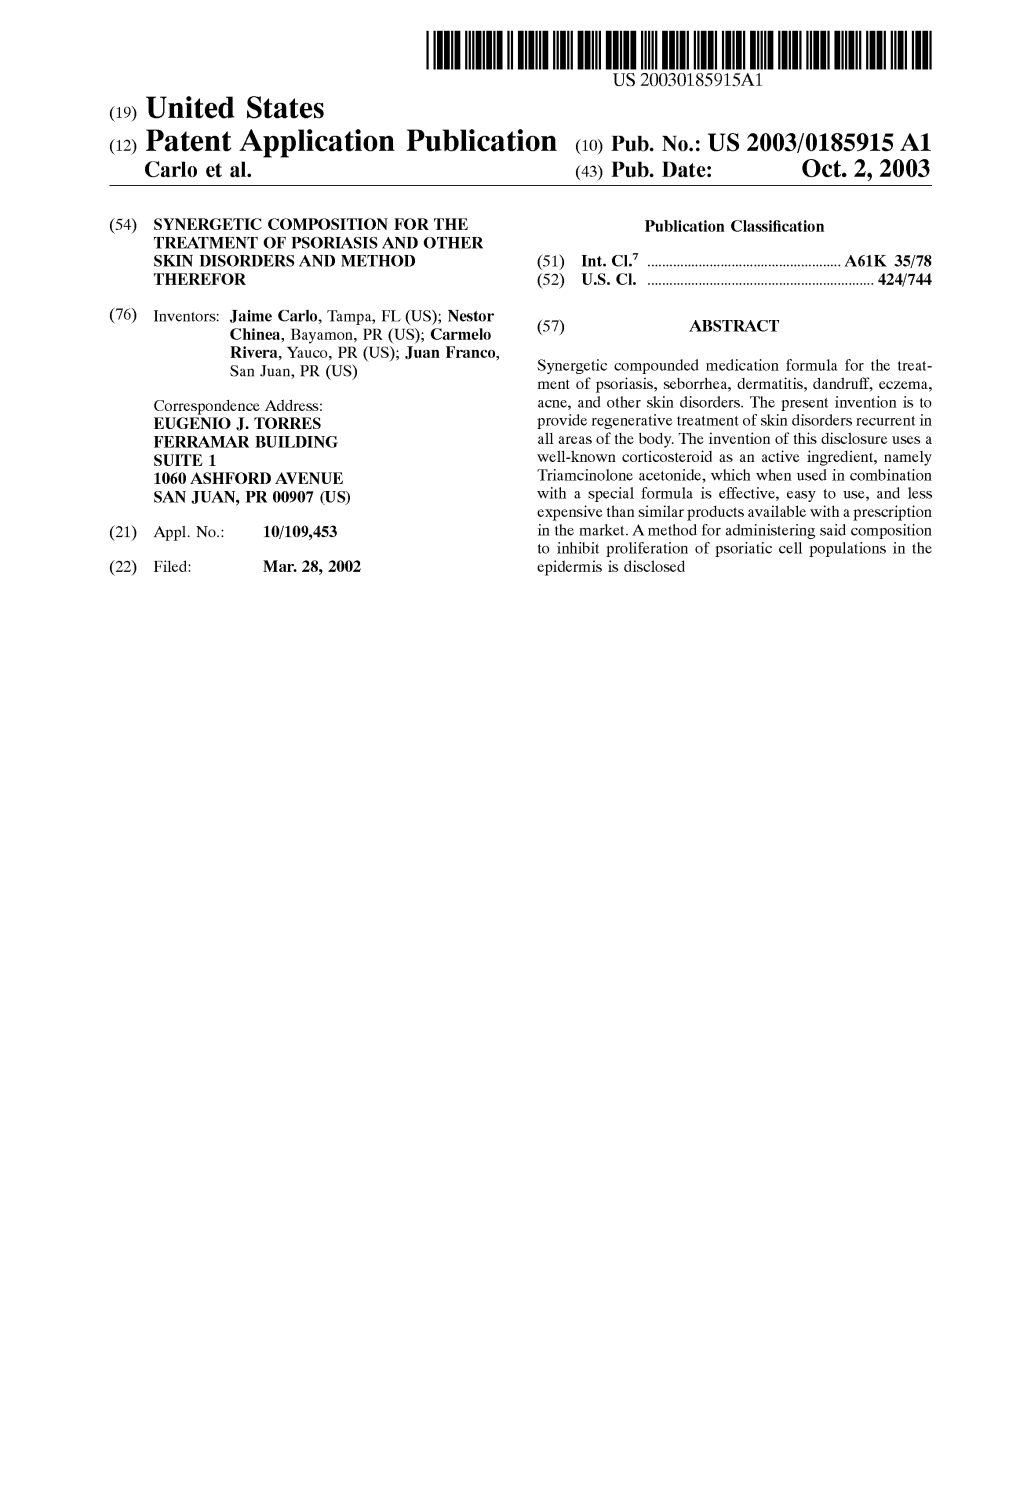 (12) Patent Application Publication (10) Pub. No.: US 2003/0185915A1 Carlo Et Al